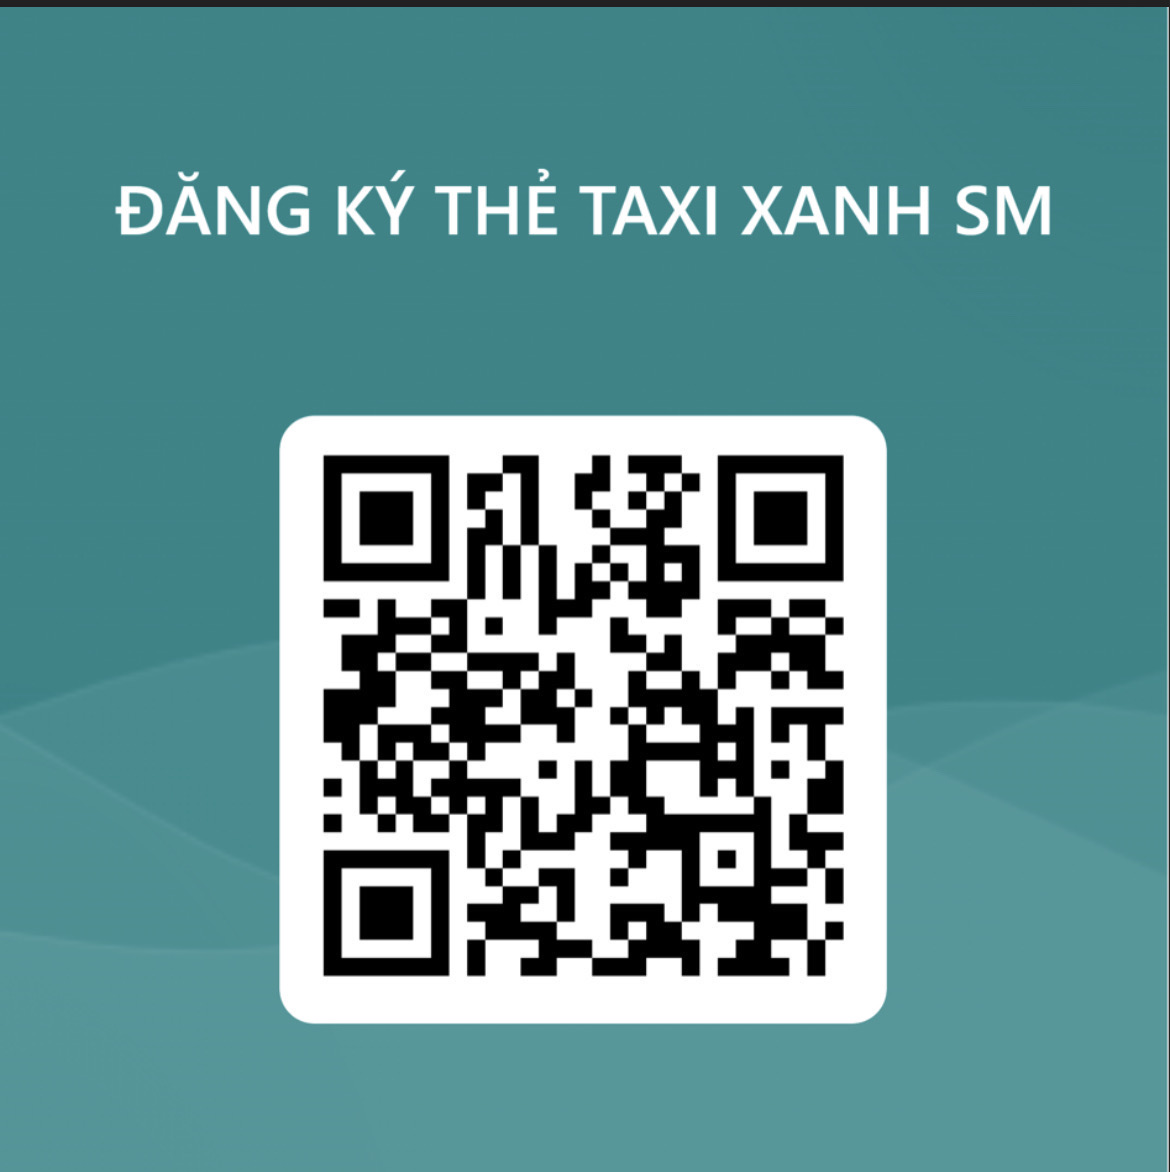 Taxi Xanh SM đạt 1 triệu chuyến sau 10 tuần, tiến tới phủ xanh 27 tỉnh thành trong năm 2023 - Ảnh 5.